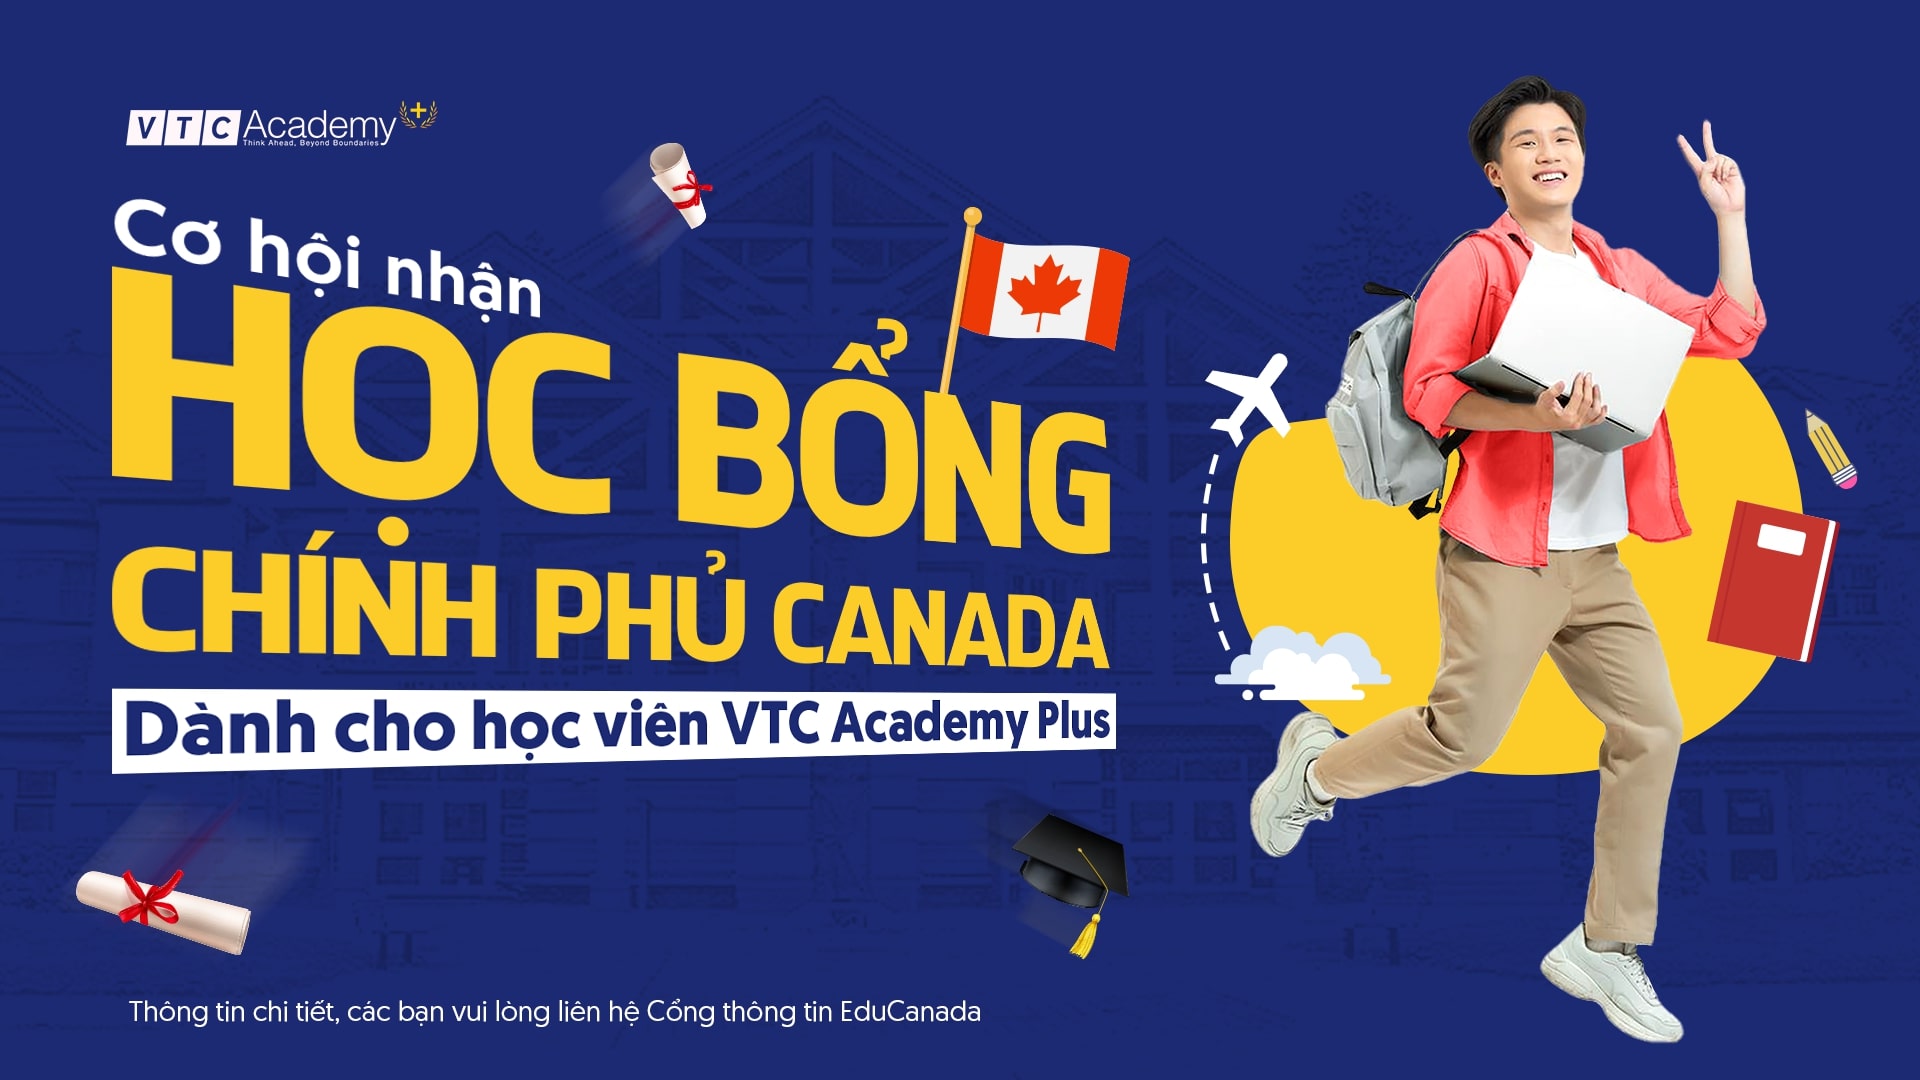 Học viên VTC Academy Plus có cơ hội nhận Học bổng Chính phủ Canada dành cho du học sinh học tại NIC